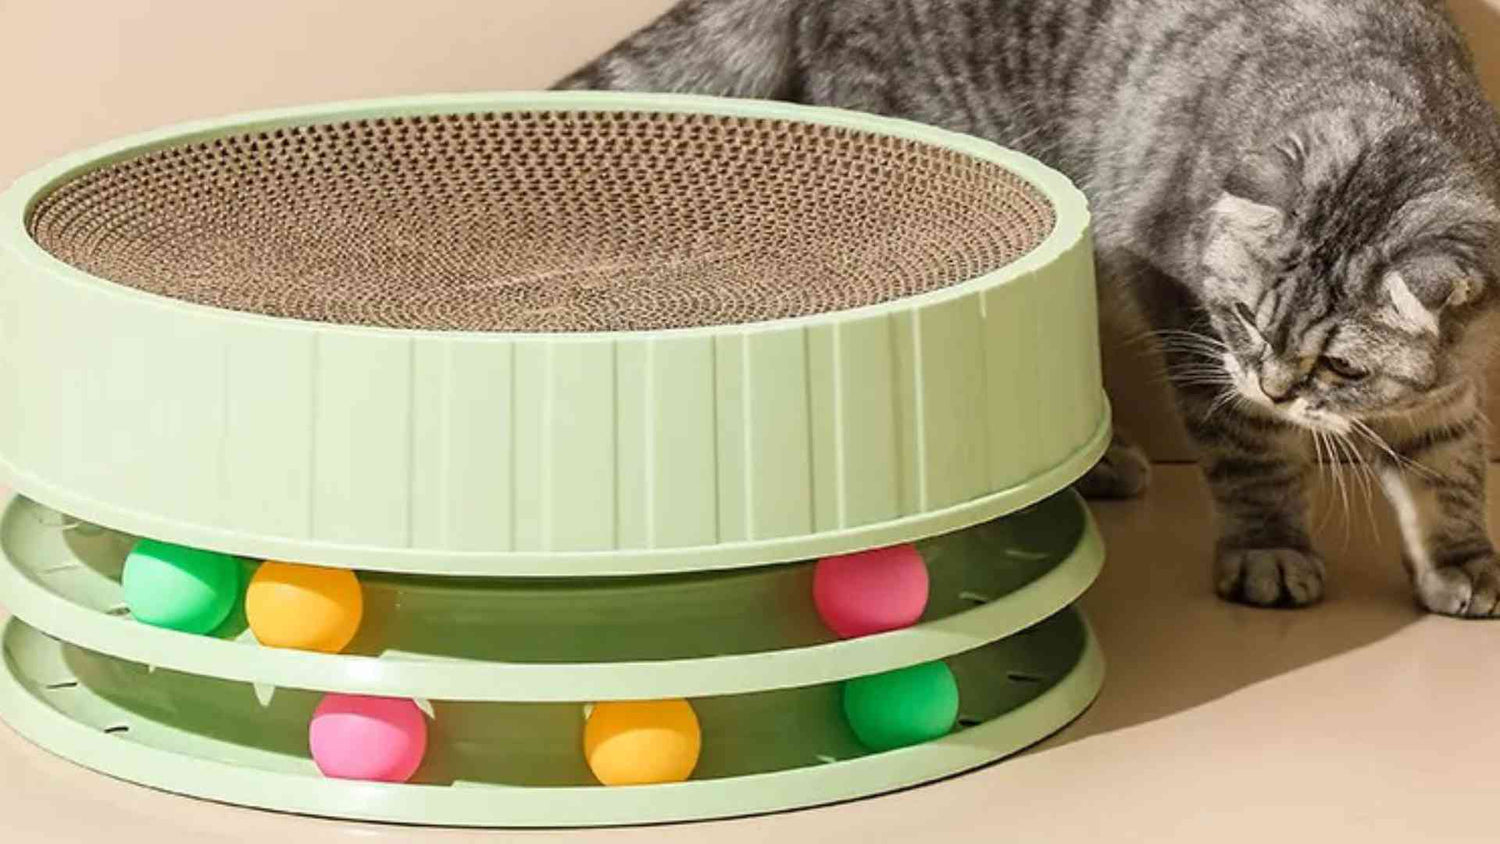 singapore online pet store, cat bowls singapore, cat shop singapore, round cat scratcher